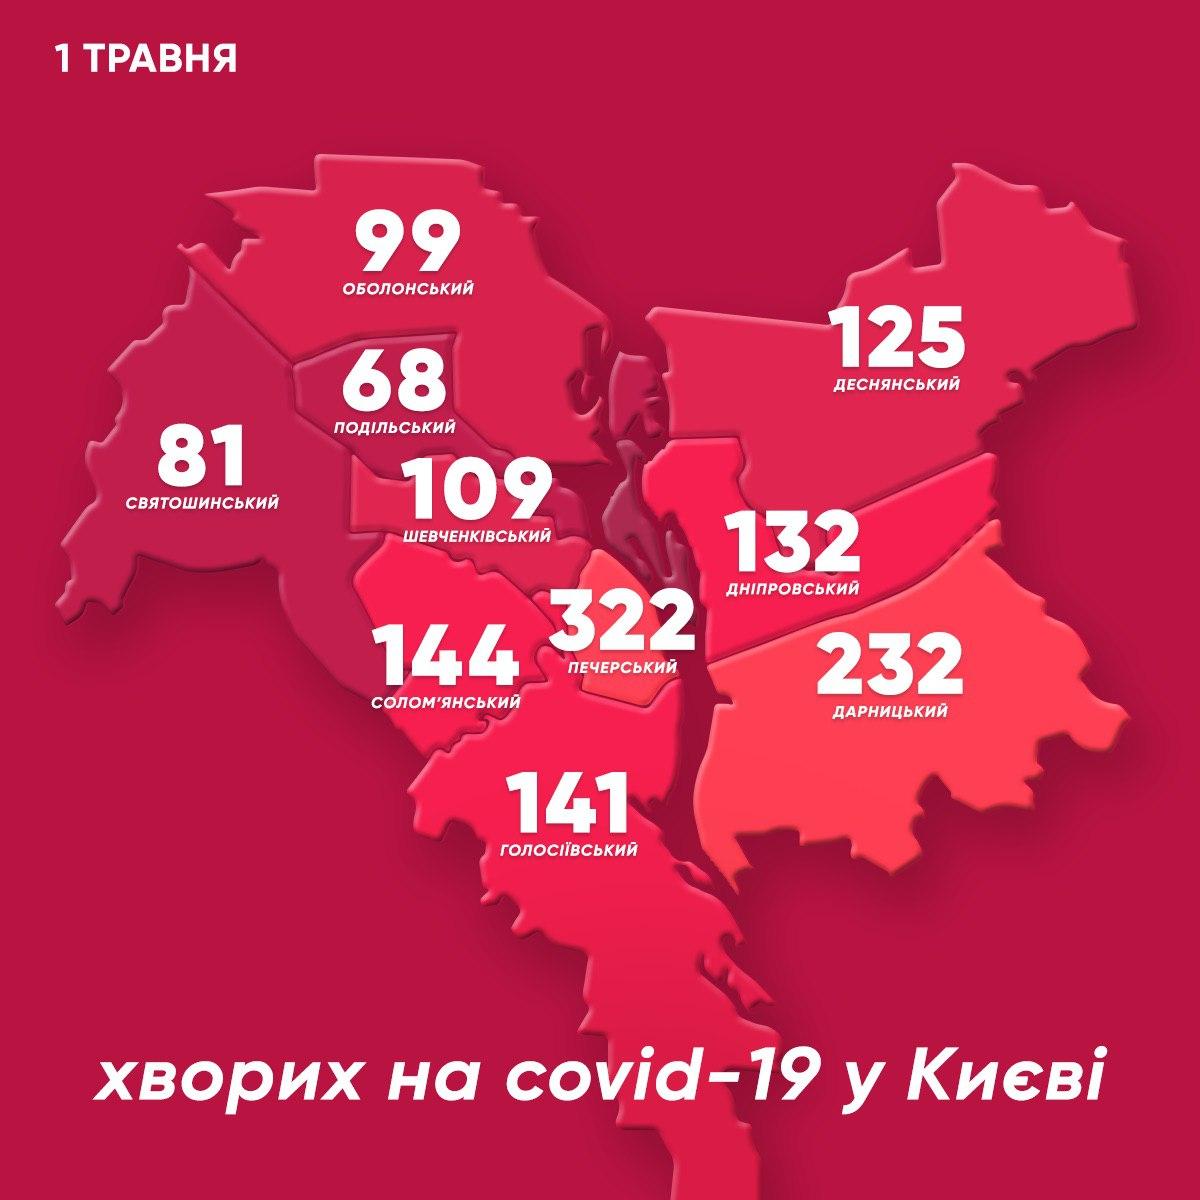 Статистика коронавируса в Киеве по районам на 1 мая